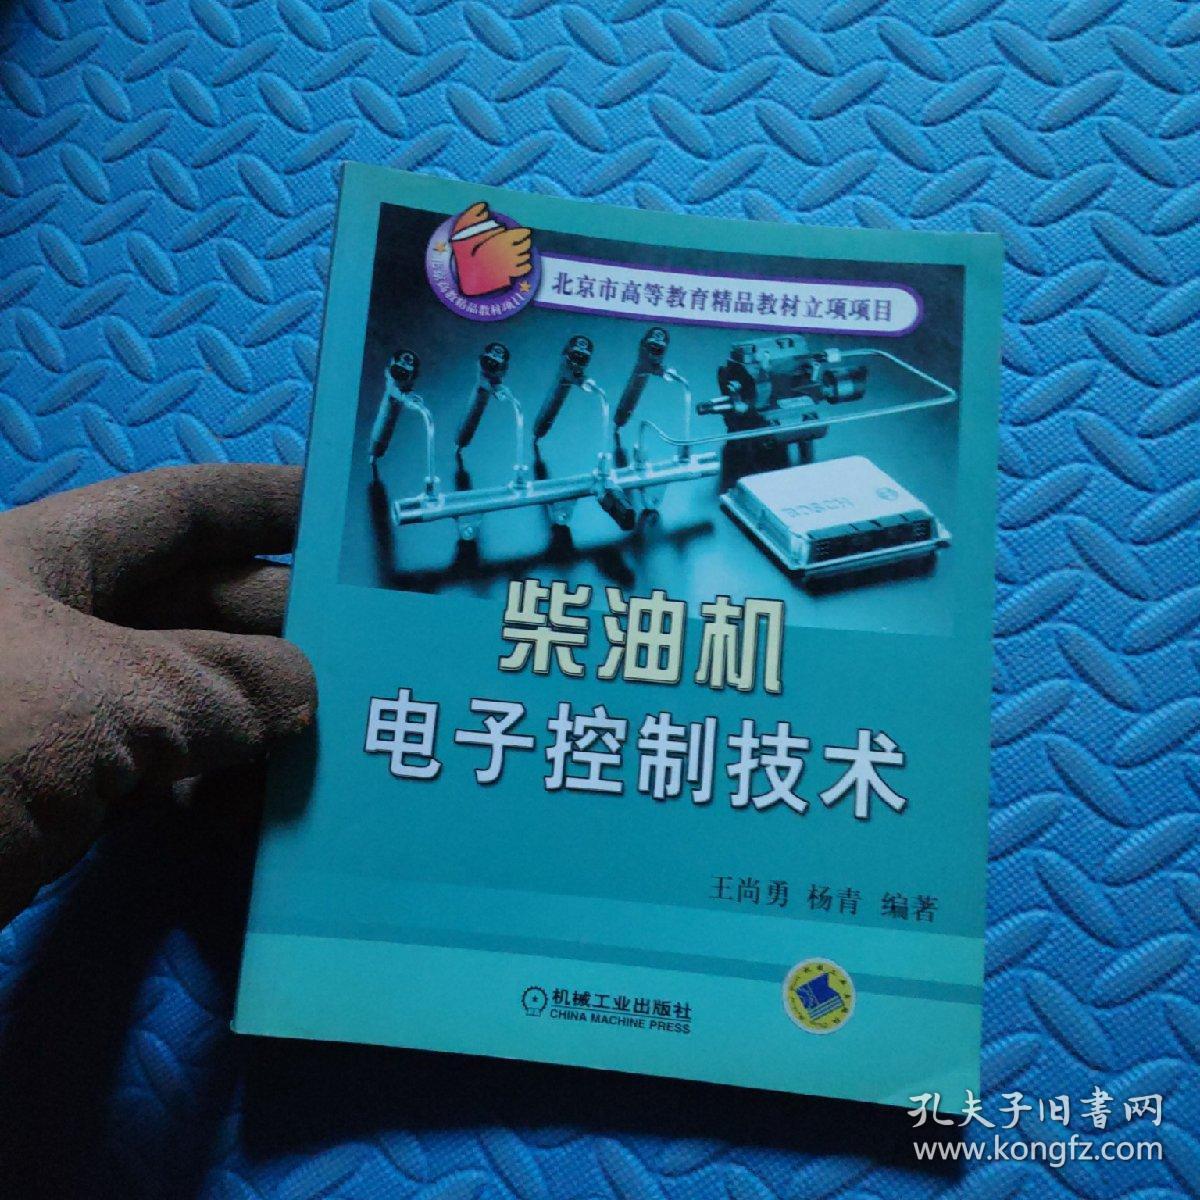 柴油机电子控制技术——北京市高等教育精品教材立项项目